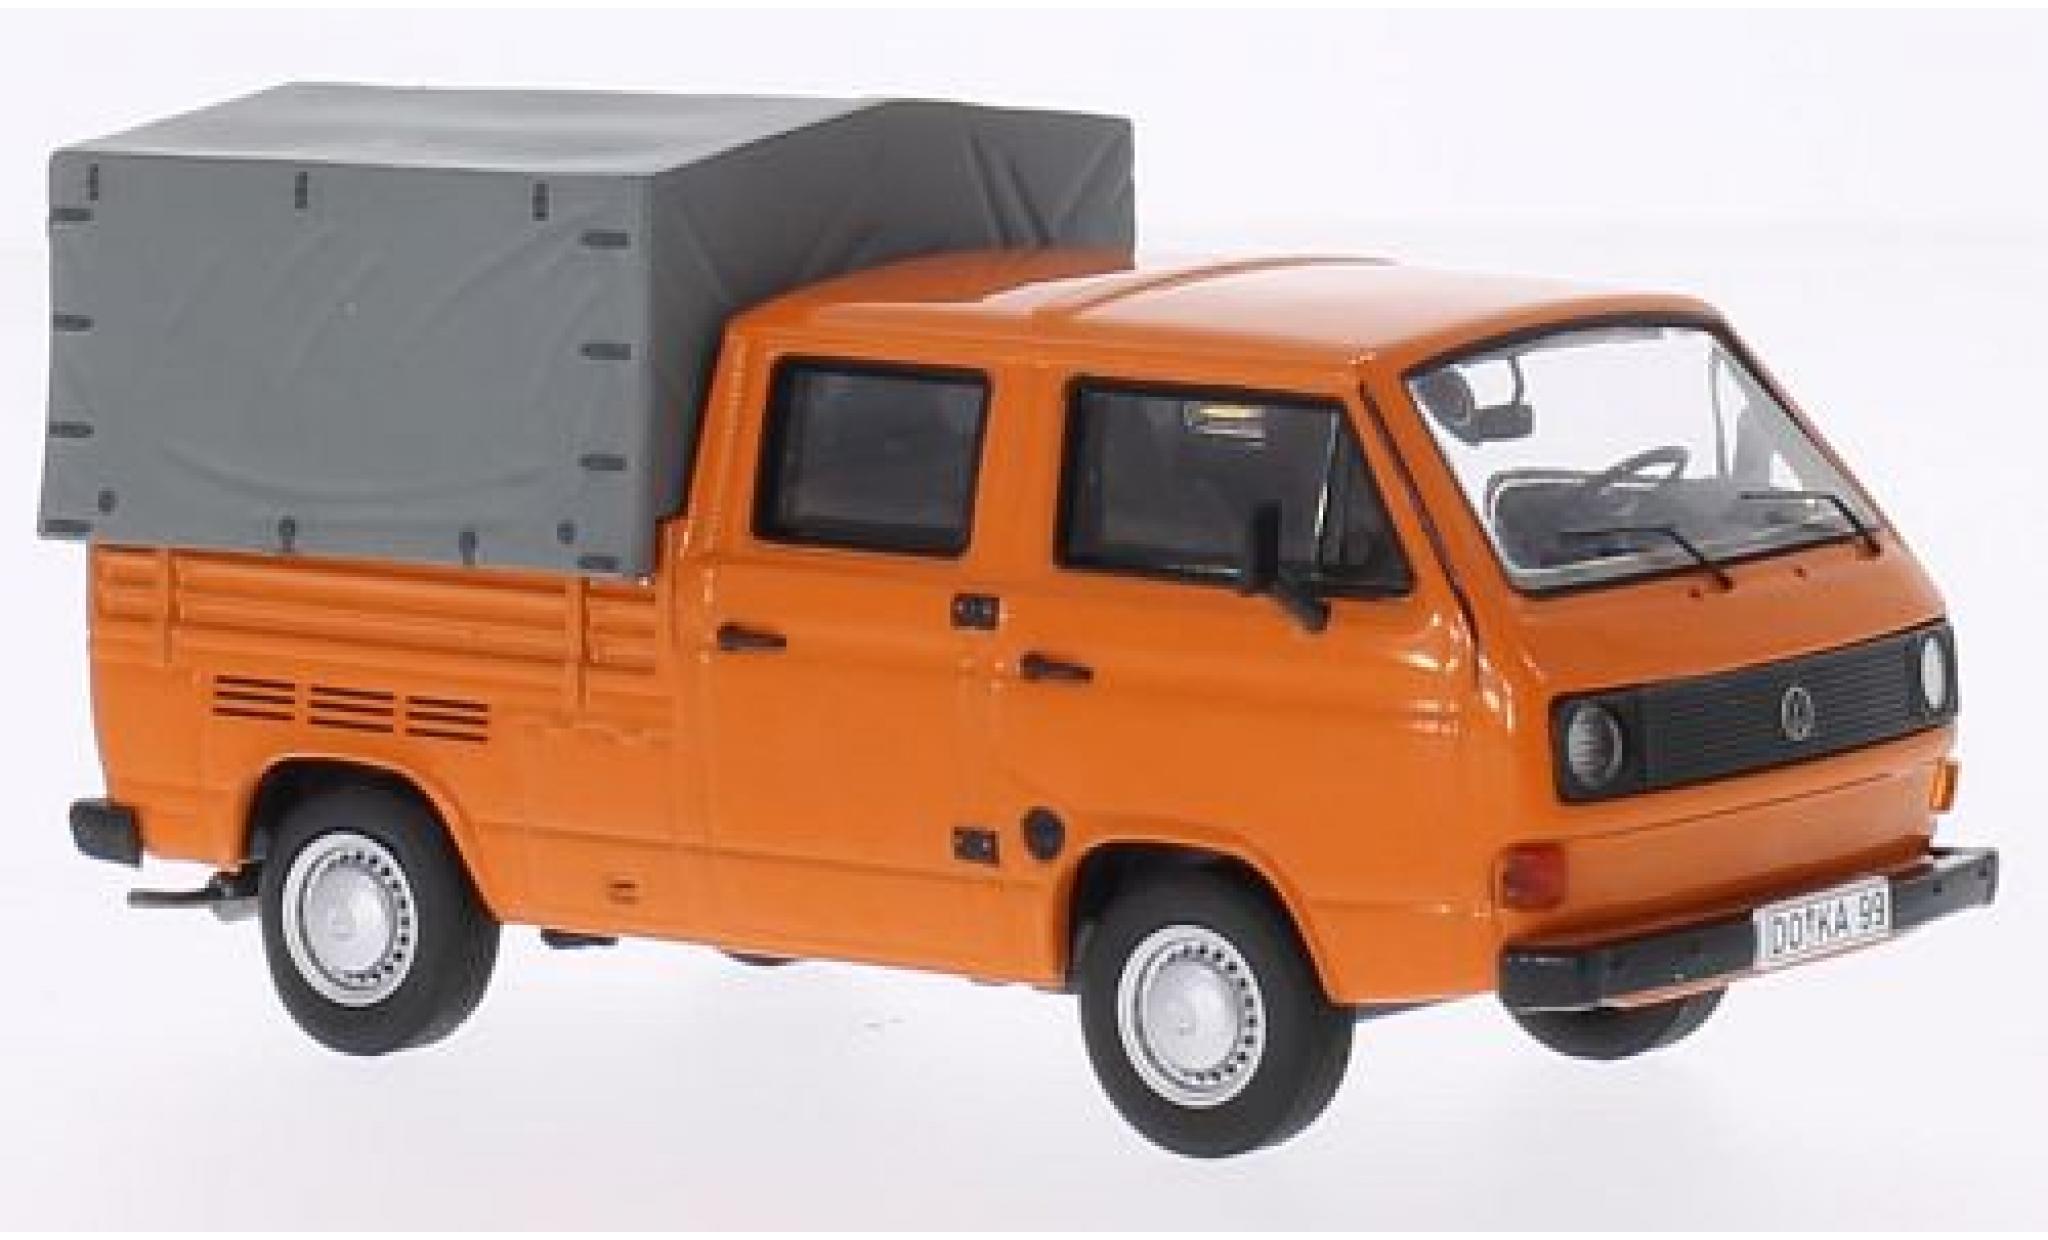 Maßstab Modell 1//43 Volkswagen T3 Doka-Pritsche Orange 1983